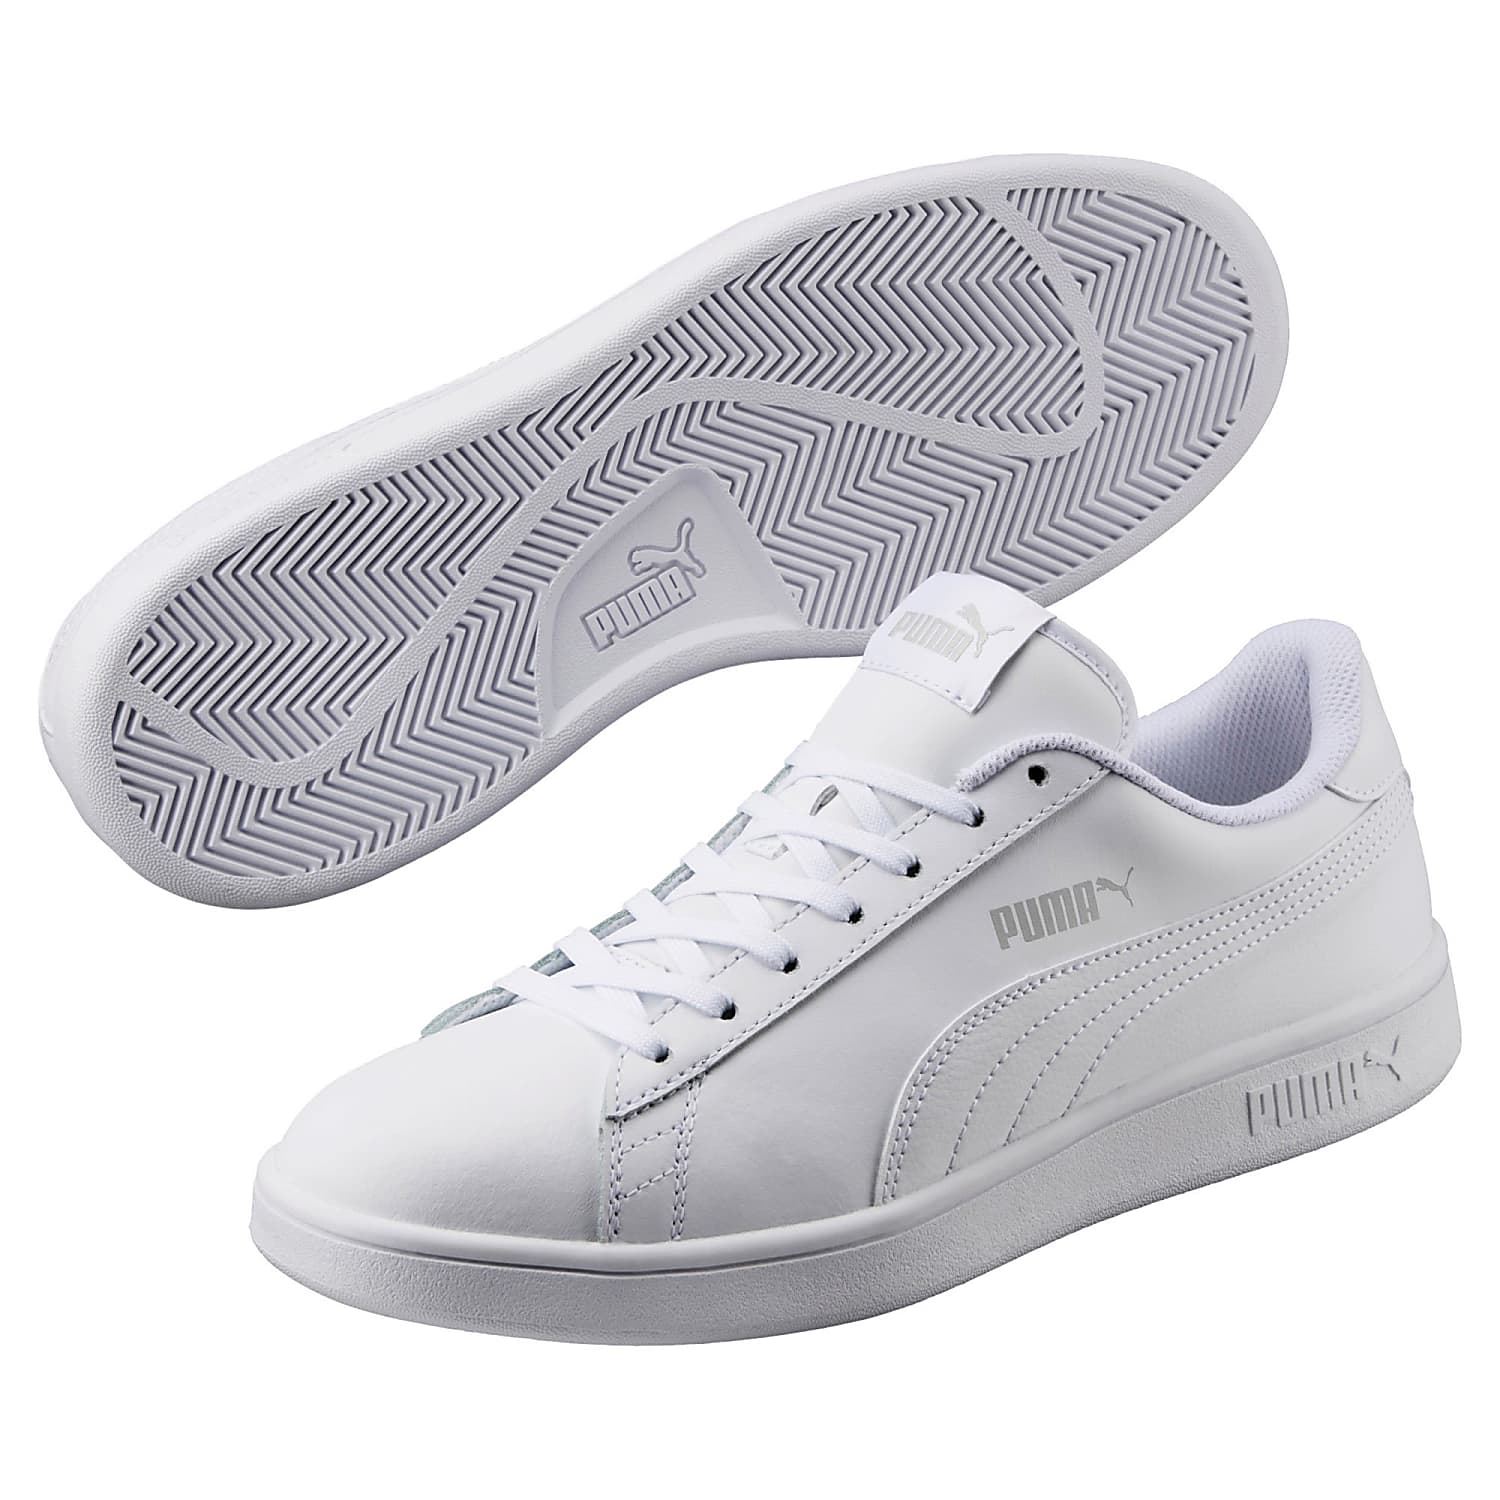 Smash V2 L Sneakers Men - Grey, White